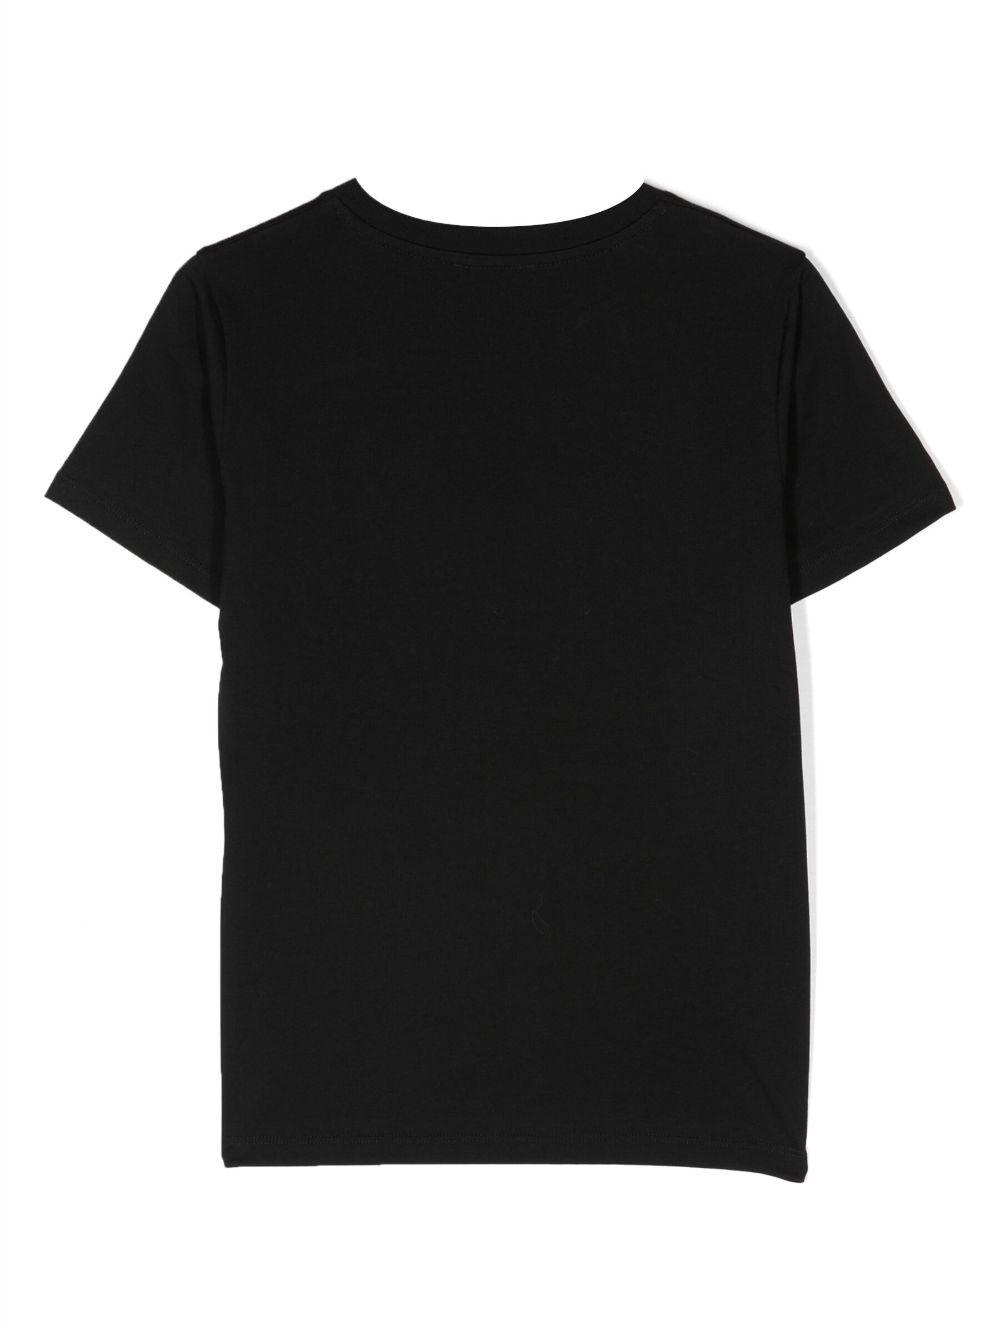 Black t-shirt for children with white logo